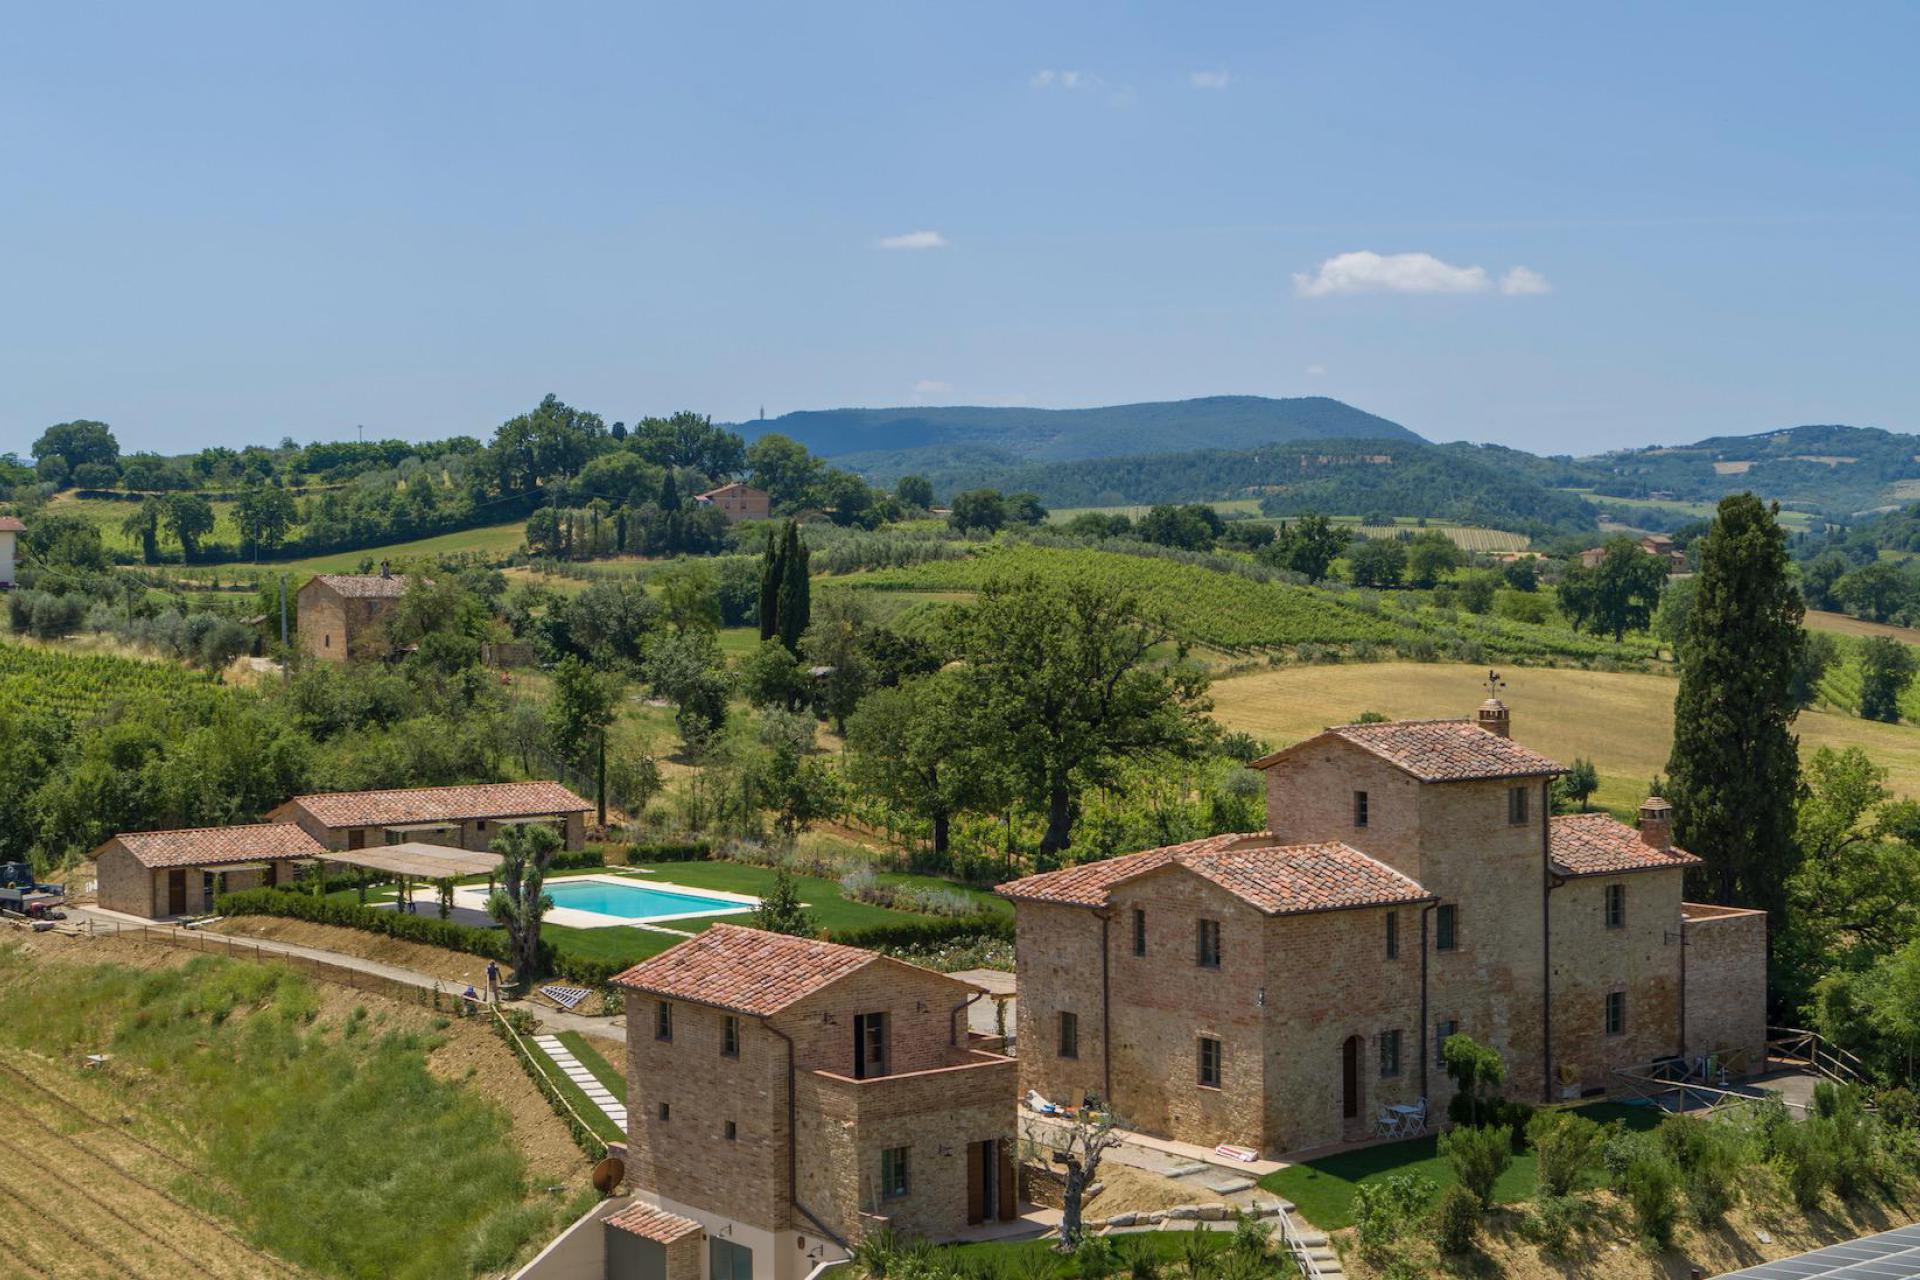 Agriturismo Toscana Agriturismo in Toscana  ideale per rilassarsi